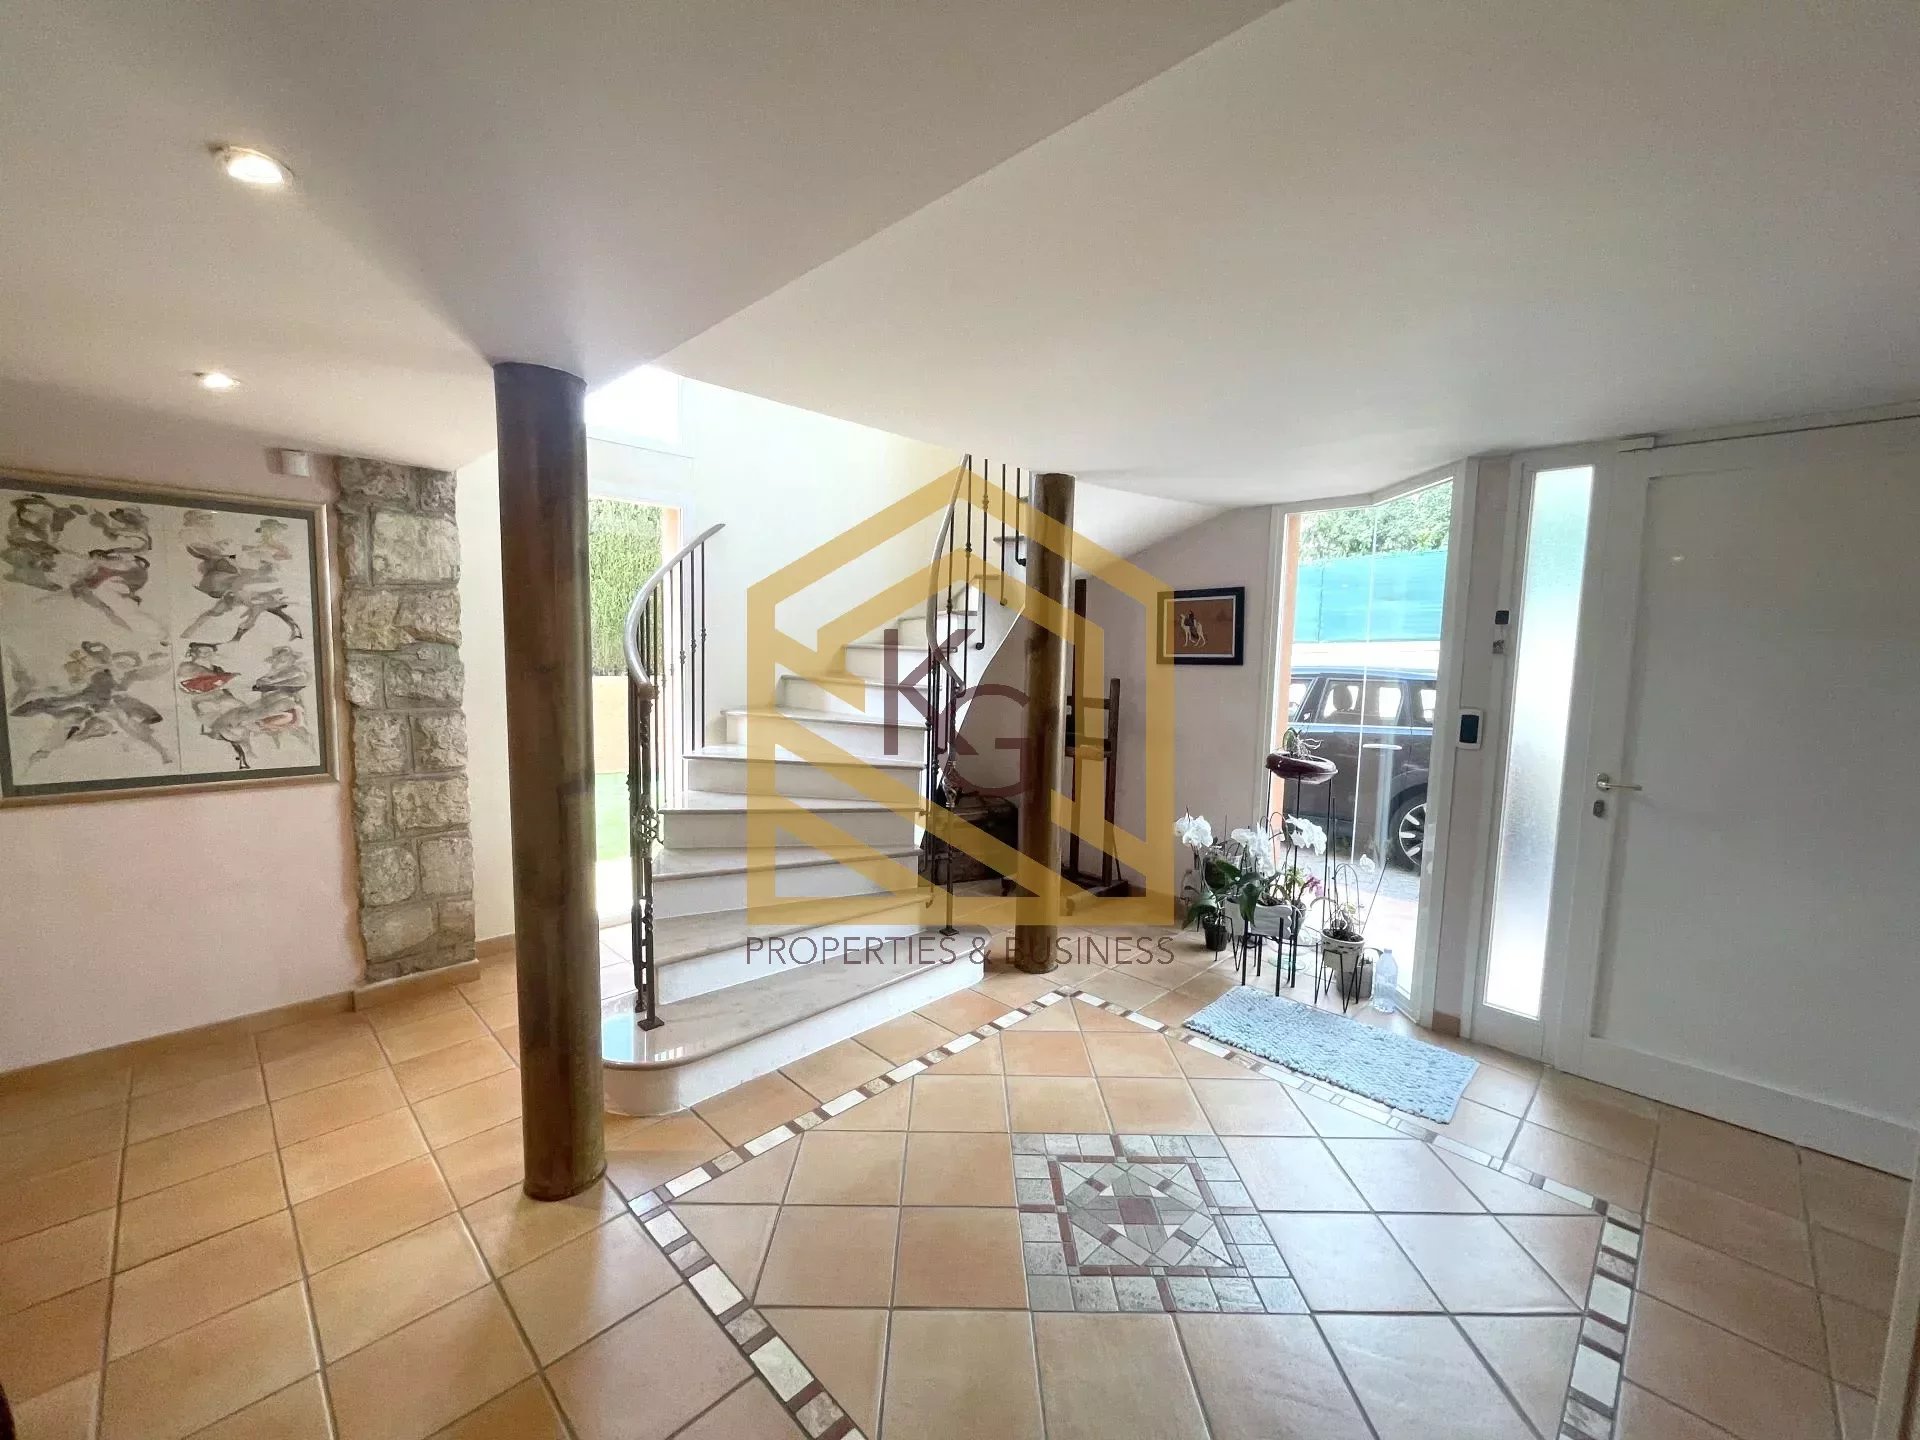 Magnifique villa moderne de 6 pièces située dans le quartier privilégié et résidentiel du plateau du Cap à Roquebrune-Cap-Martin